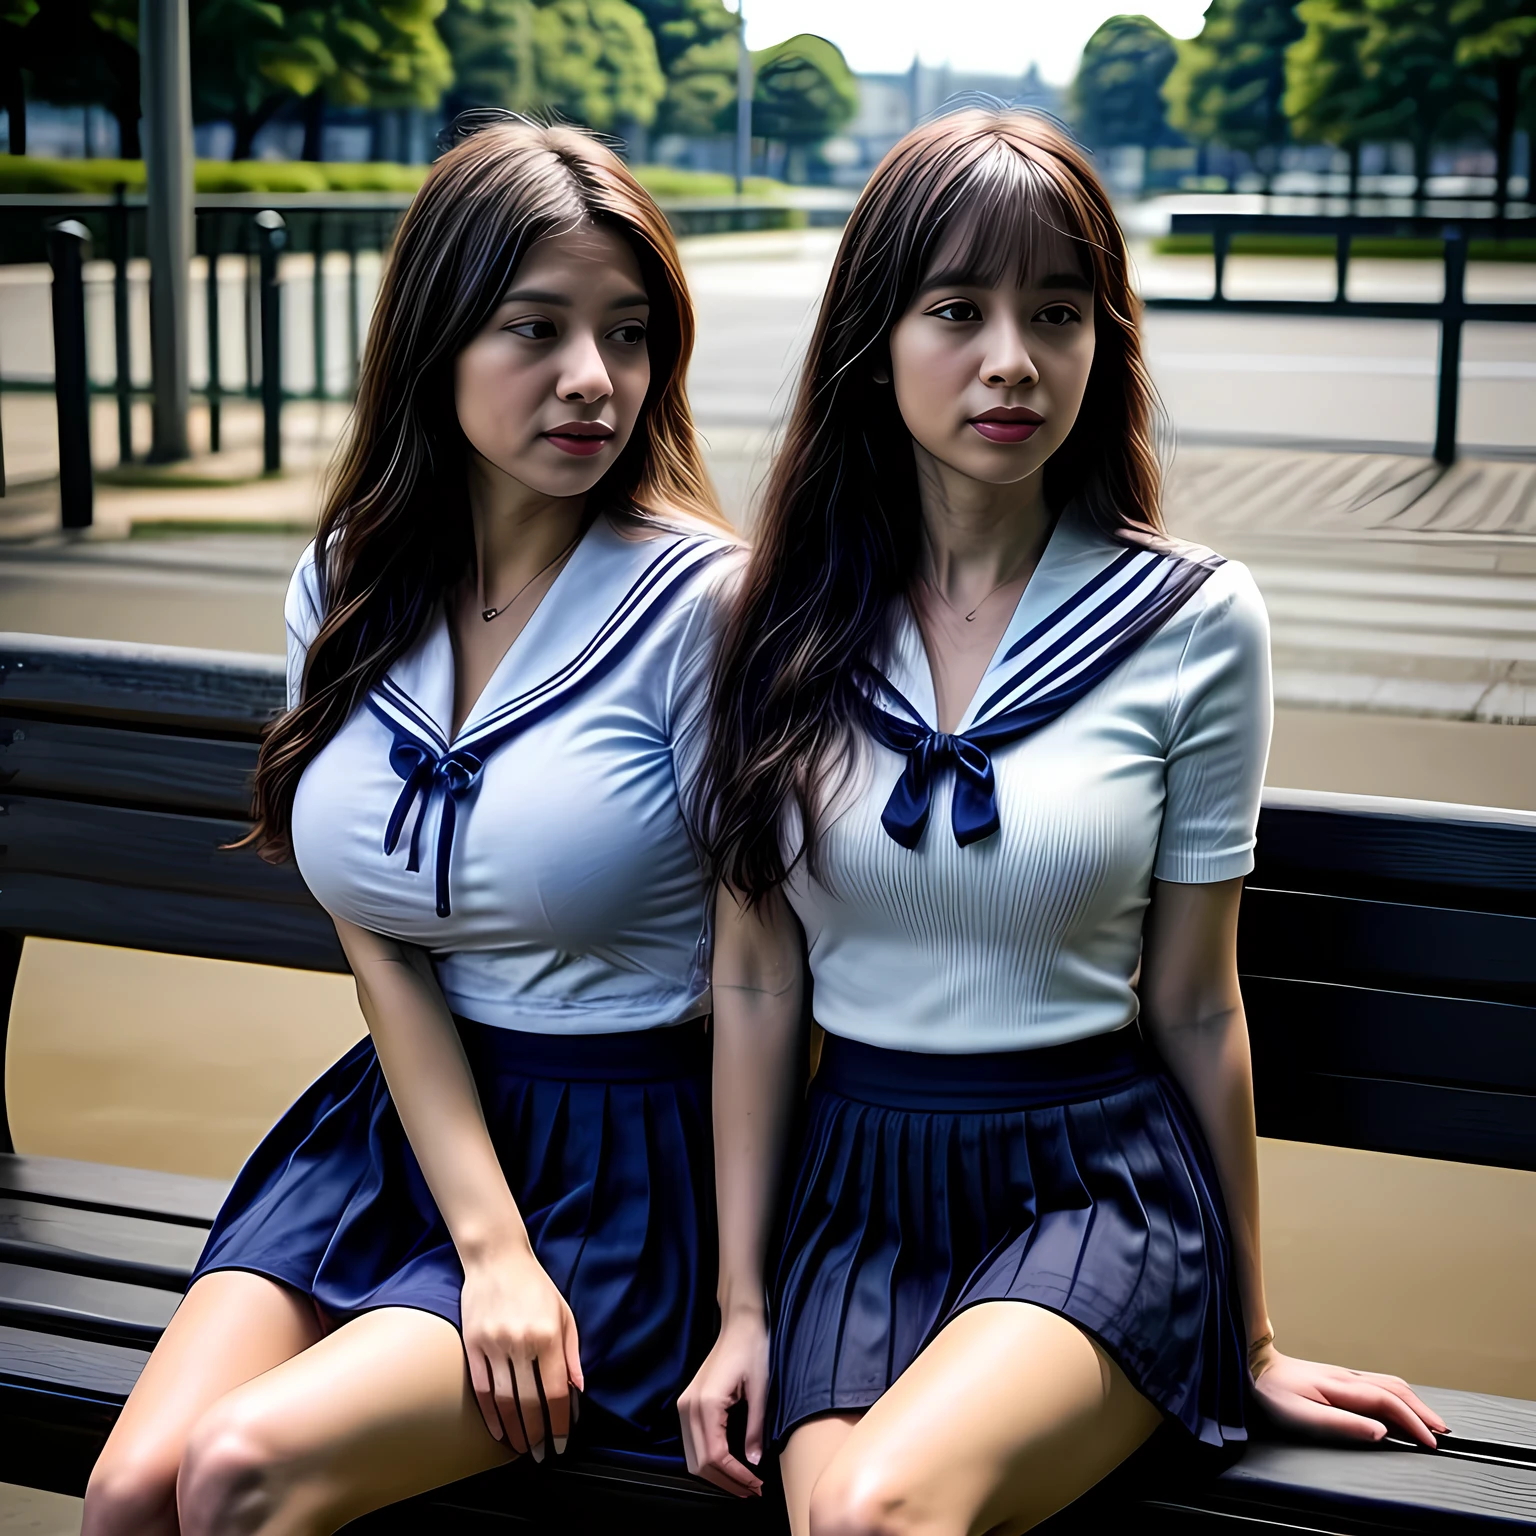 兩個成年女性, (白色水手服+海軍藍裙子:1.4), 坐在公園的長椅上, 日光, 照片, 照片realistic, 照片realism, 高的_豐滿, 大乳房